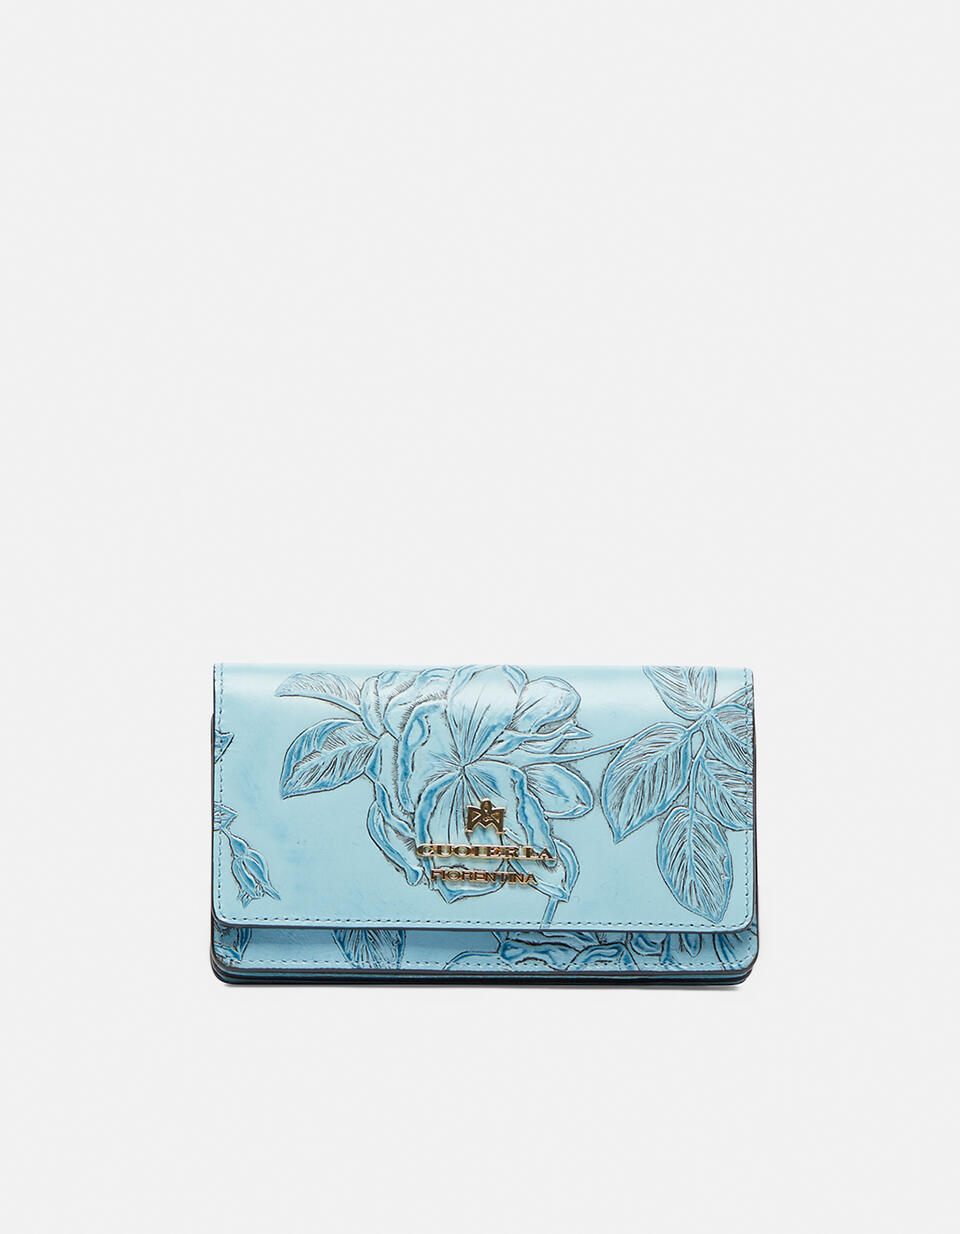 Accordian style wallet  - Women's Wallets - Women's Wallets - Wallets - Cuoieria Fiorentina